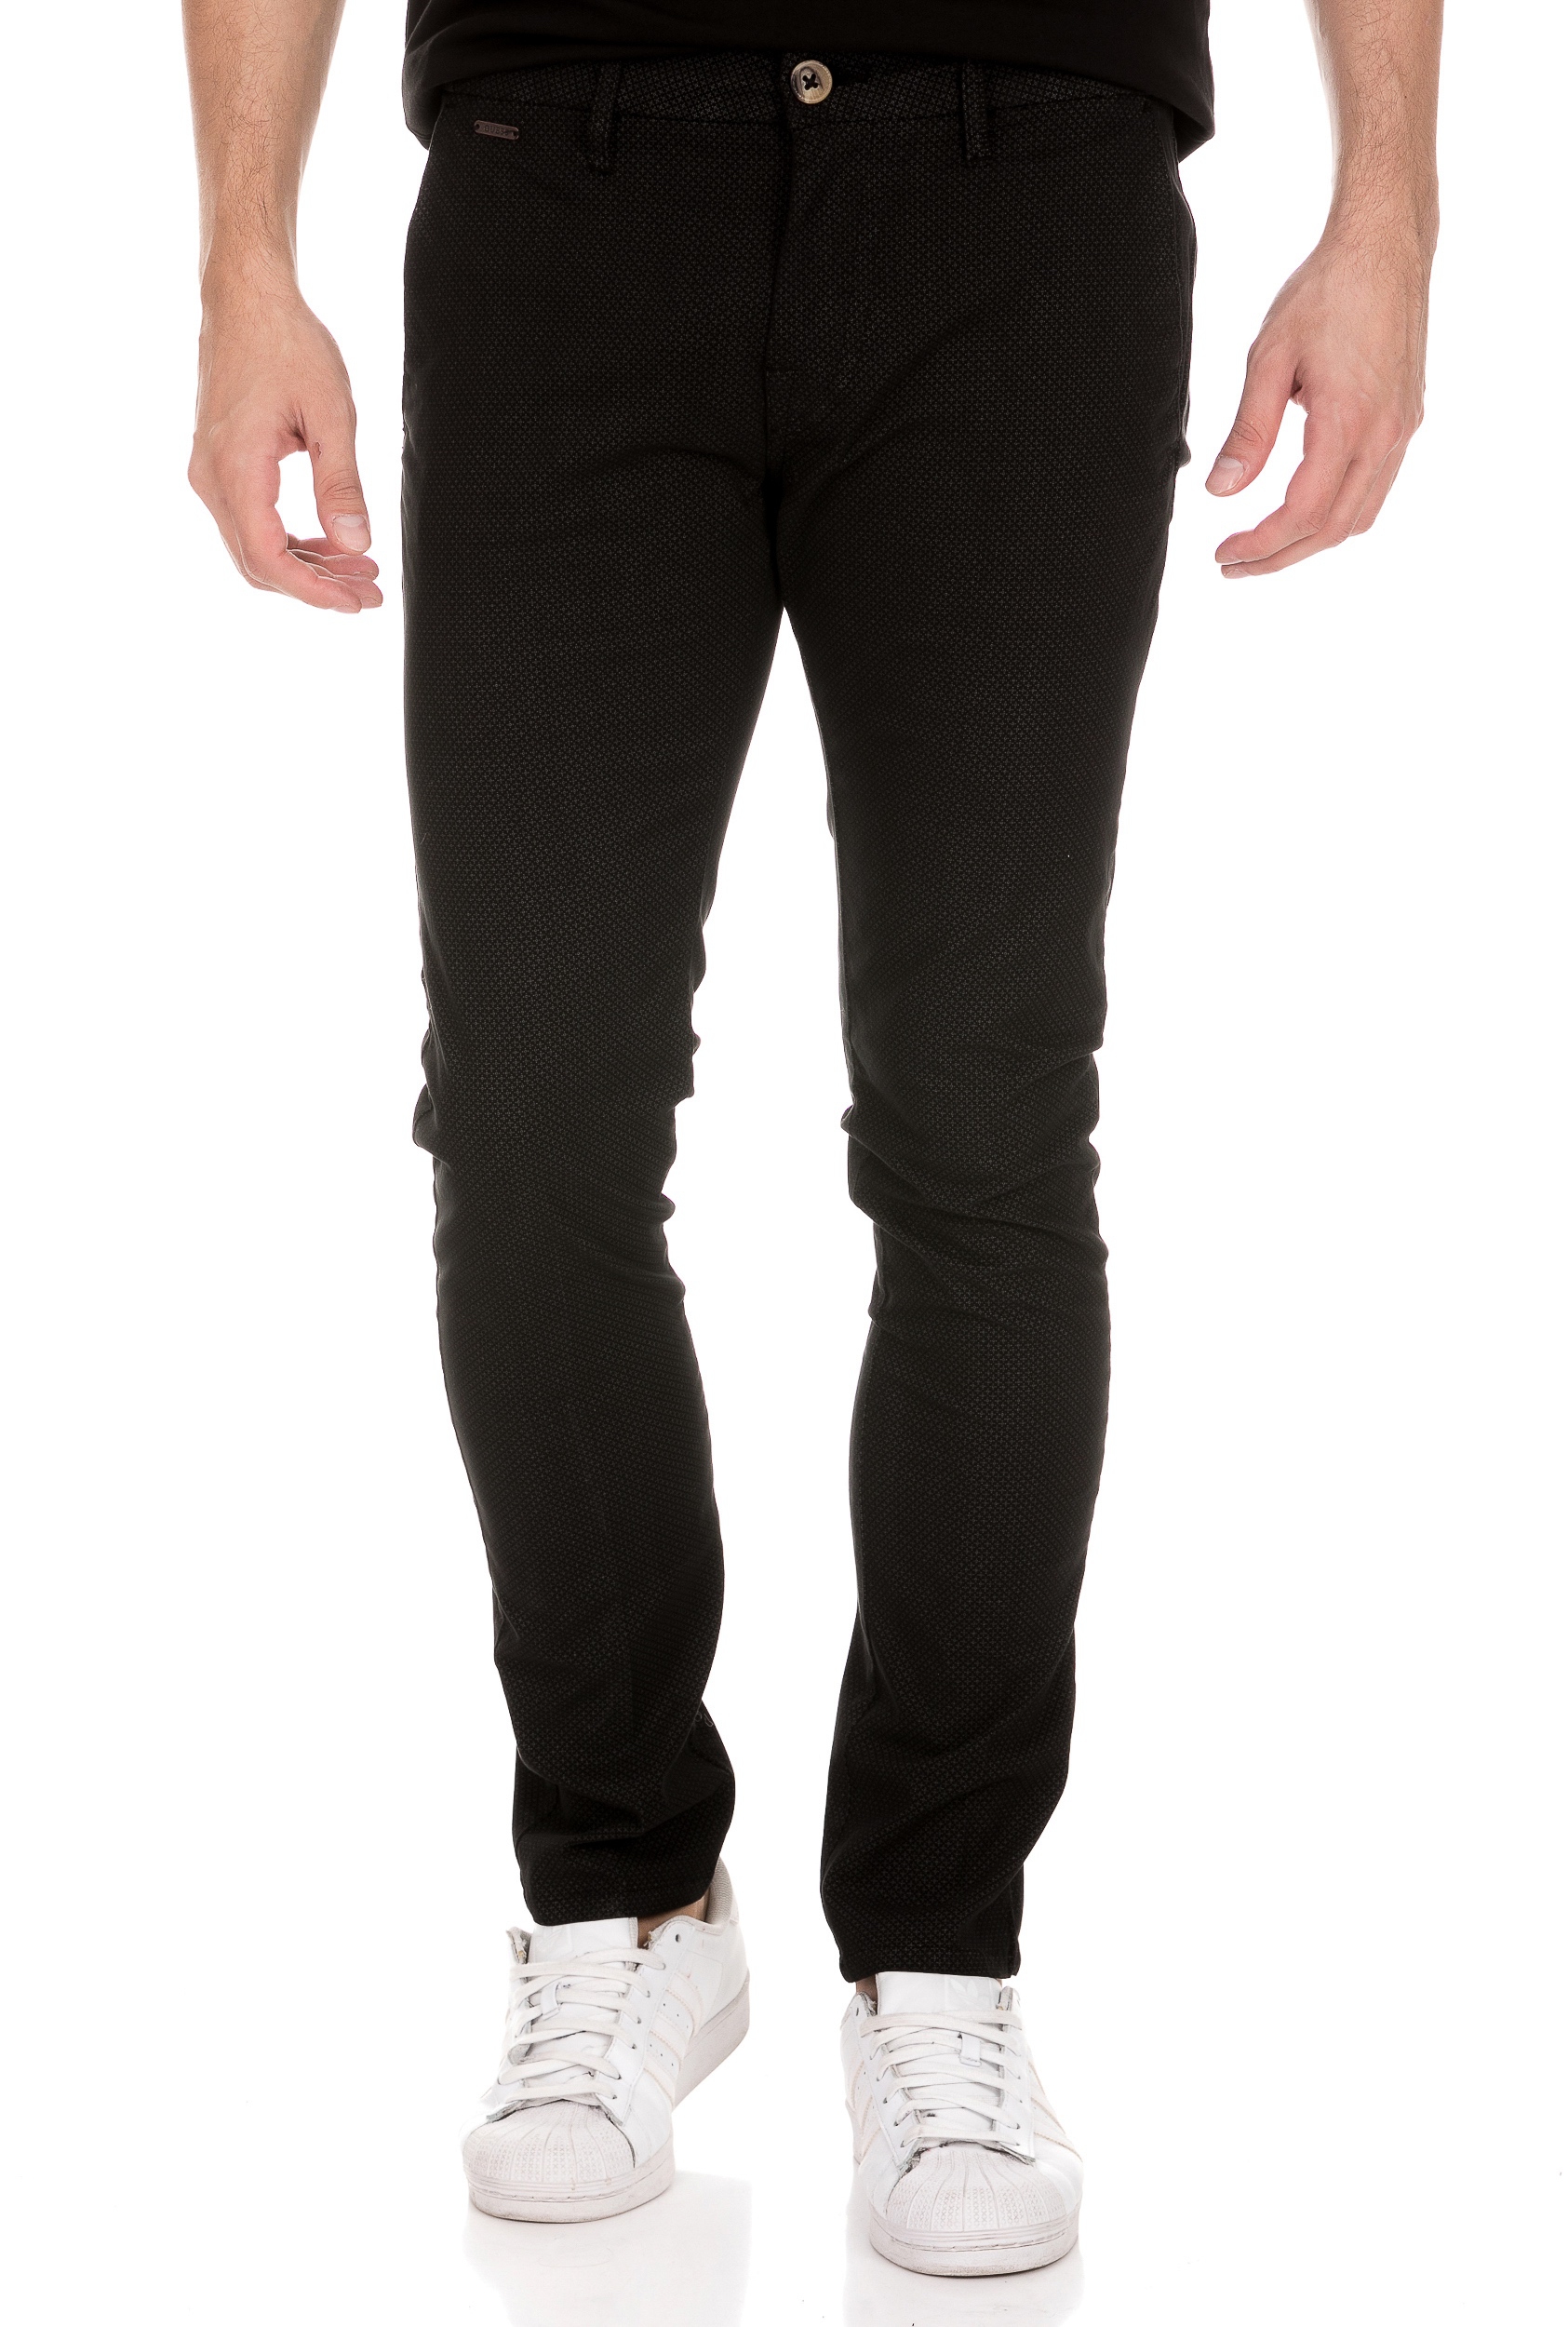 Ανδρικά/Ρούχα/Παντελόνια/Chinos GUESS - Ανδρικό chino παντελόνι GUESS DANIEL PEACH SATEEN μαύρο